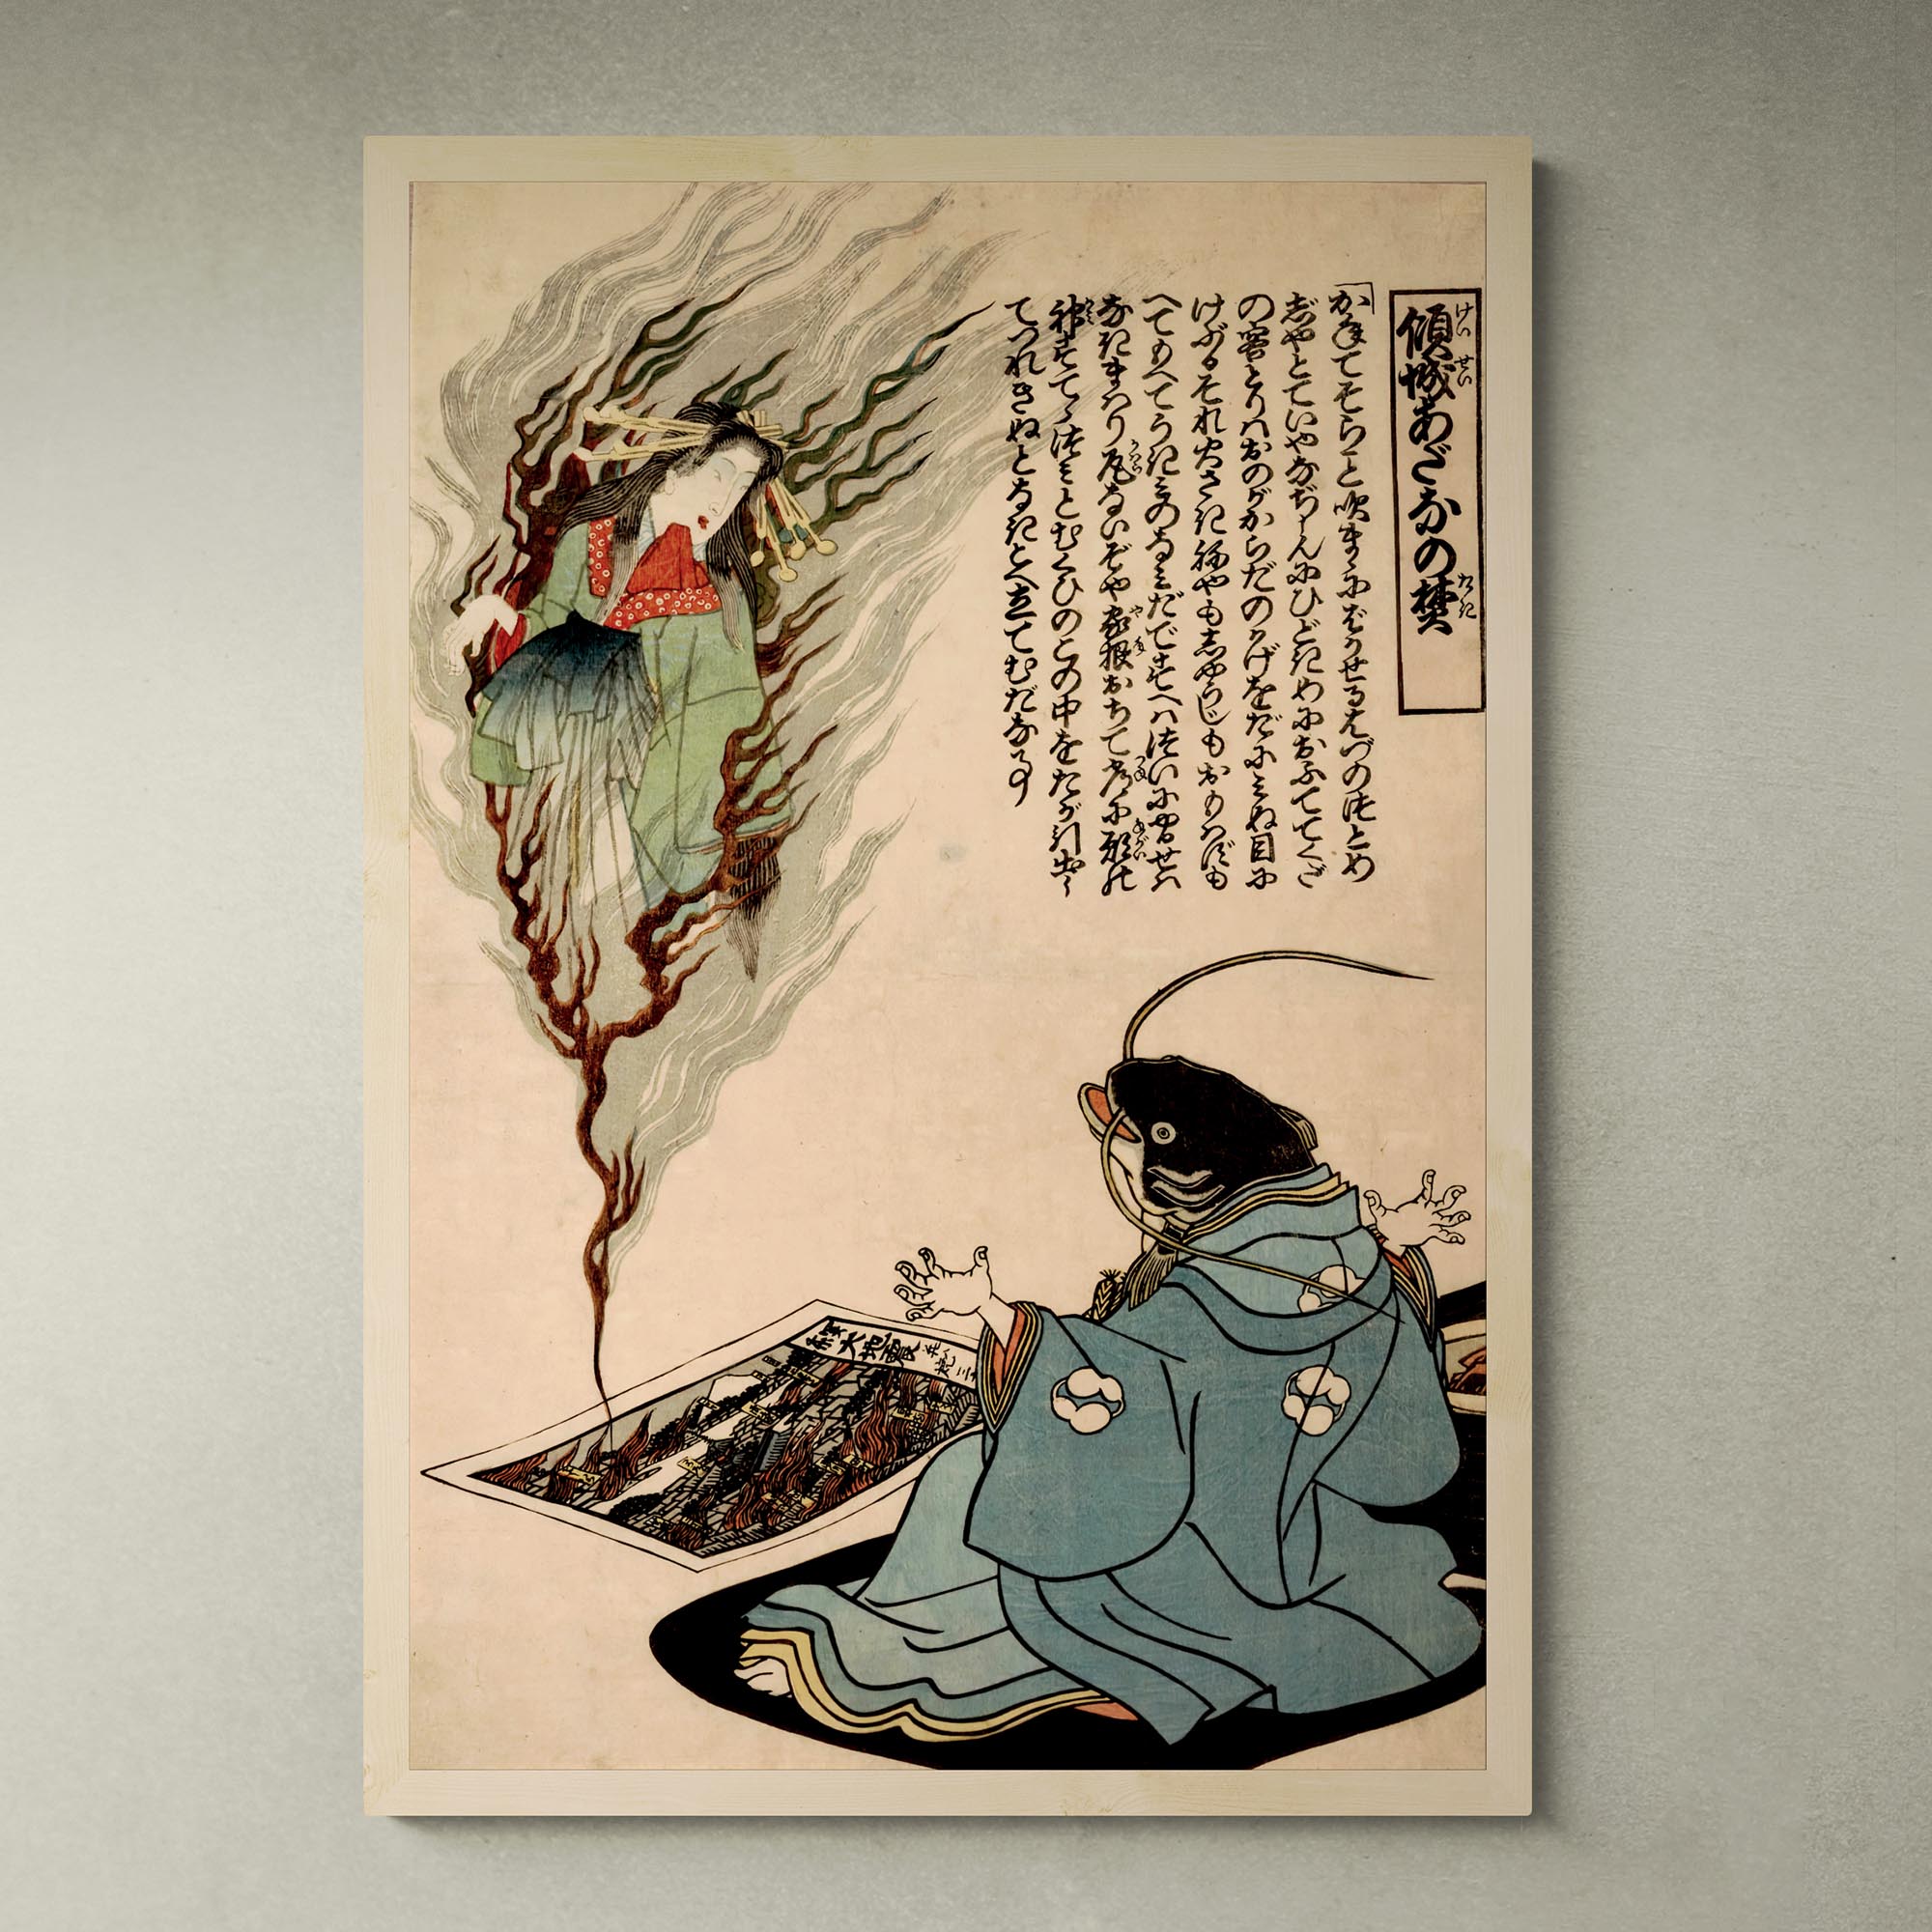 giclee 4"x6" The Namazu Yokai | Japanese Catfish Yokai Mythology Earthquake Deity | Namazu Catfish Vintage Woodblock Fine Art Print